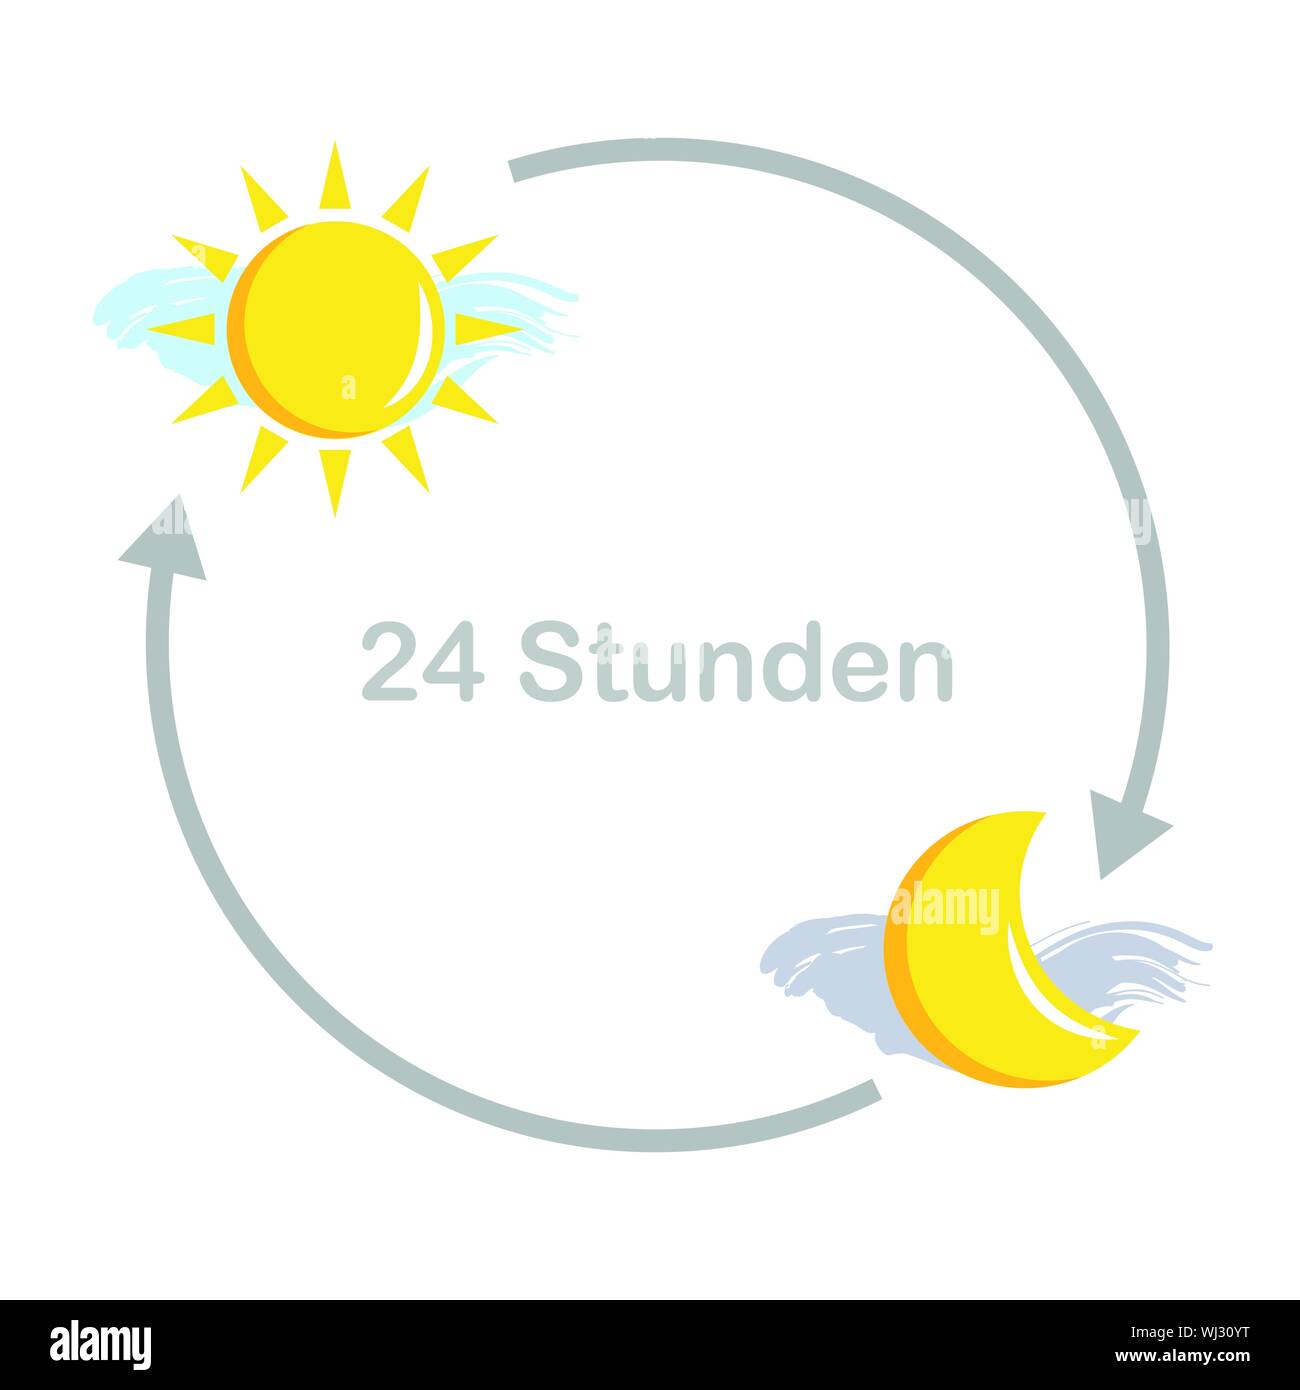 24 Stunden Sonne und Mond, Tag und Nacht Vektor-illustration EPS 10. Stock Vektor